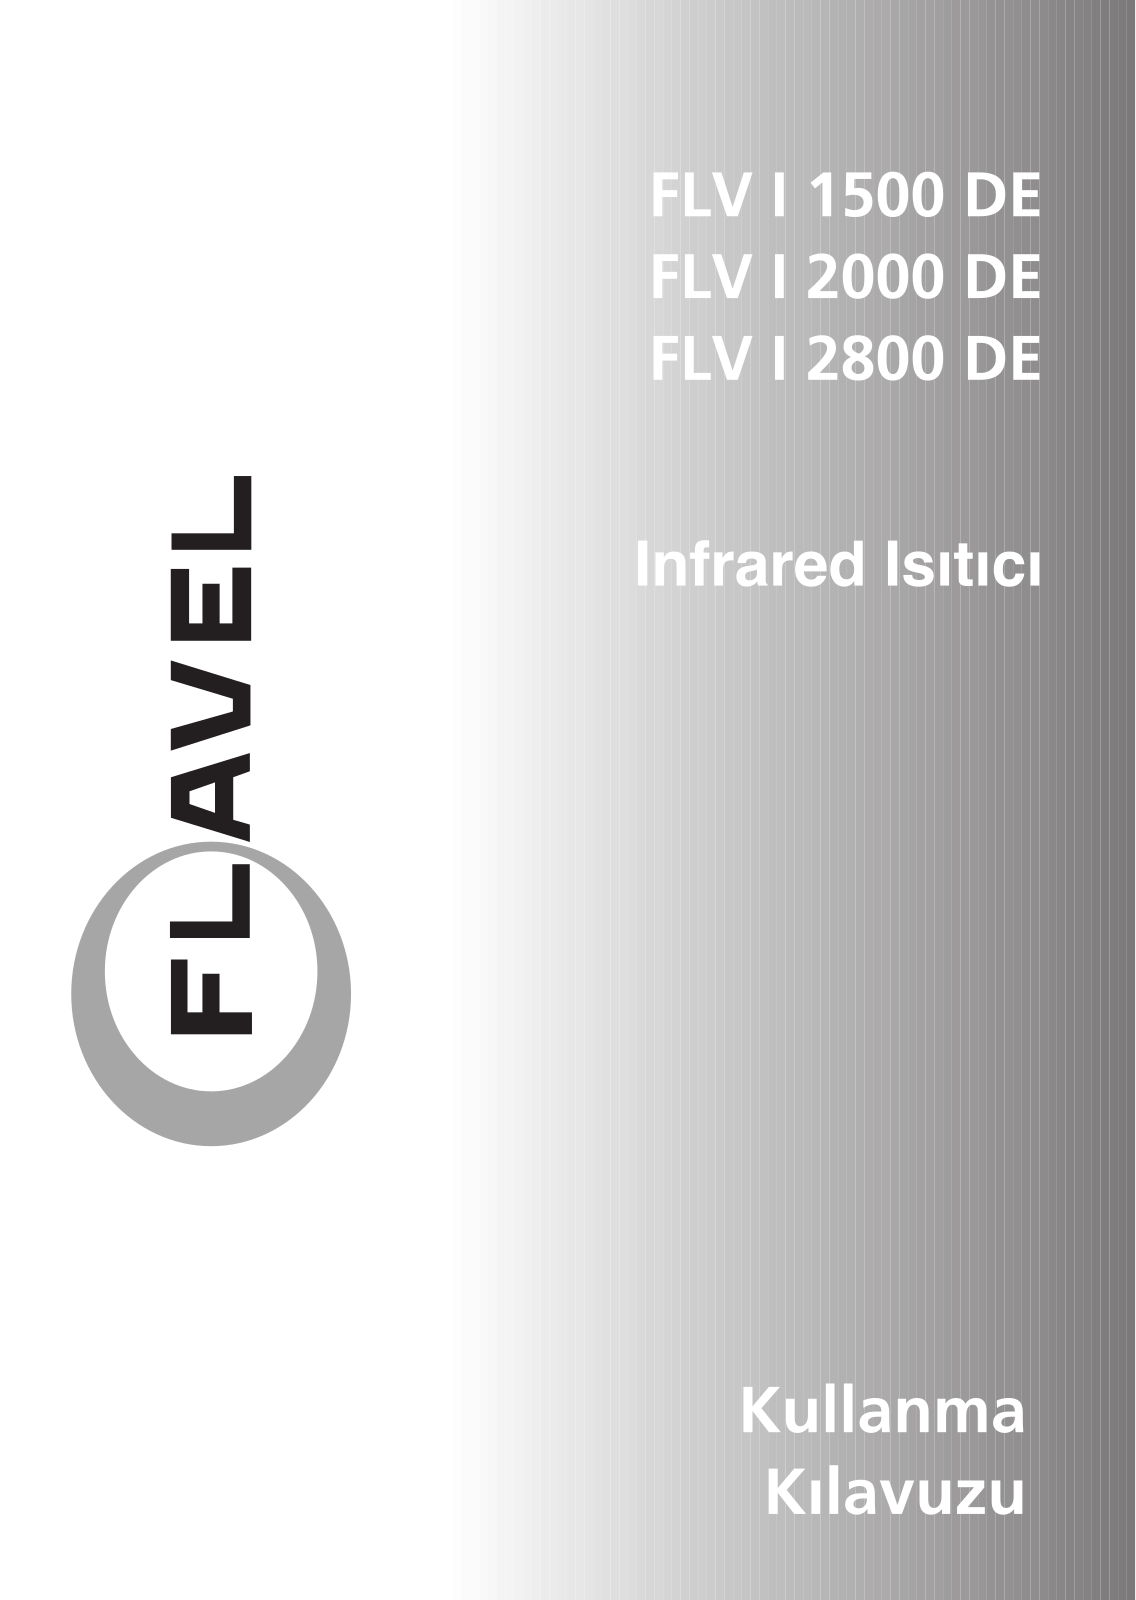 Beko FLV I 2800 DE, FLV I 2000 DE, FLV I 1500 DE Manual